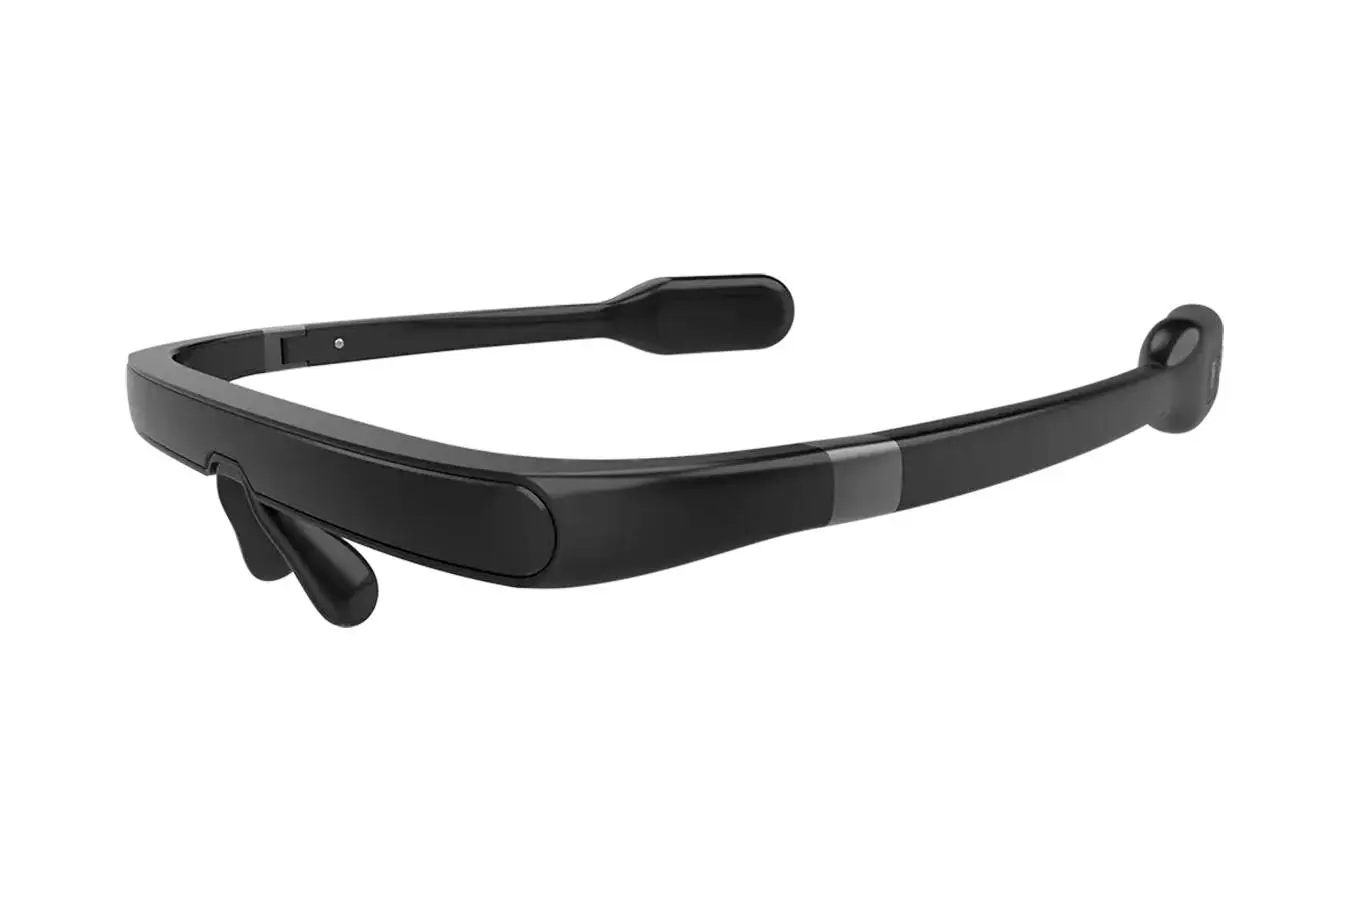 Eynək işıq terapiyası üçün Pegasi Smart Sleep Glasses II (black) - 1 - большое изображение